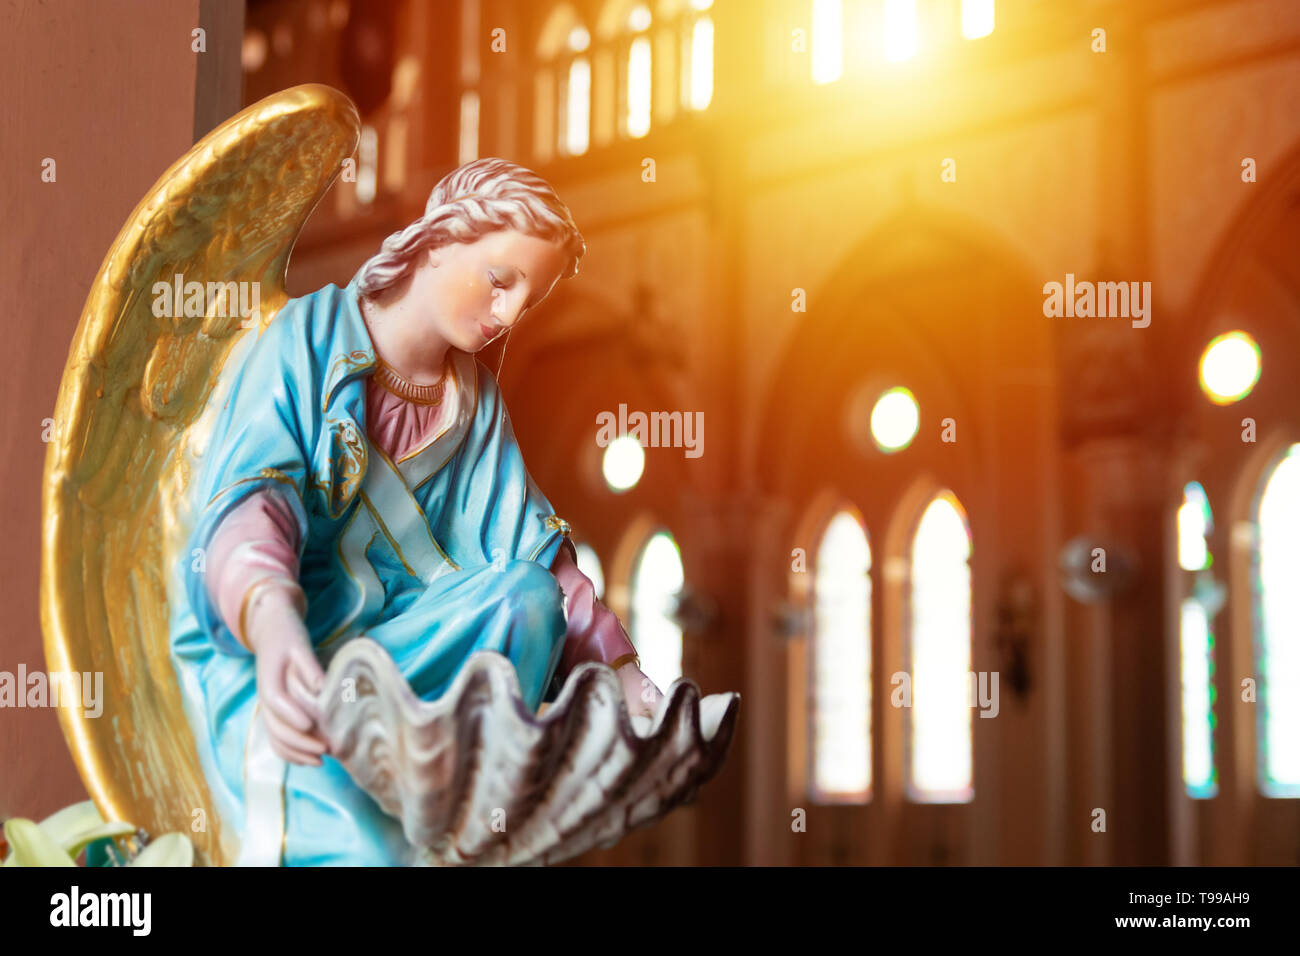 Estatua de la Virgen María en la iglesia con la luz del sol desde la parte superior de la ventana, la religión cristiana Foto de stock